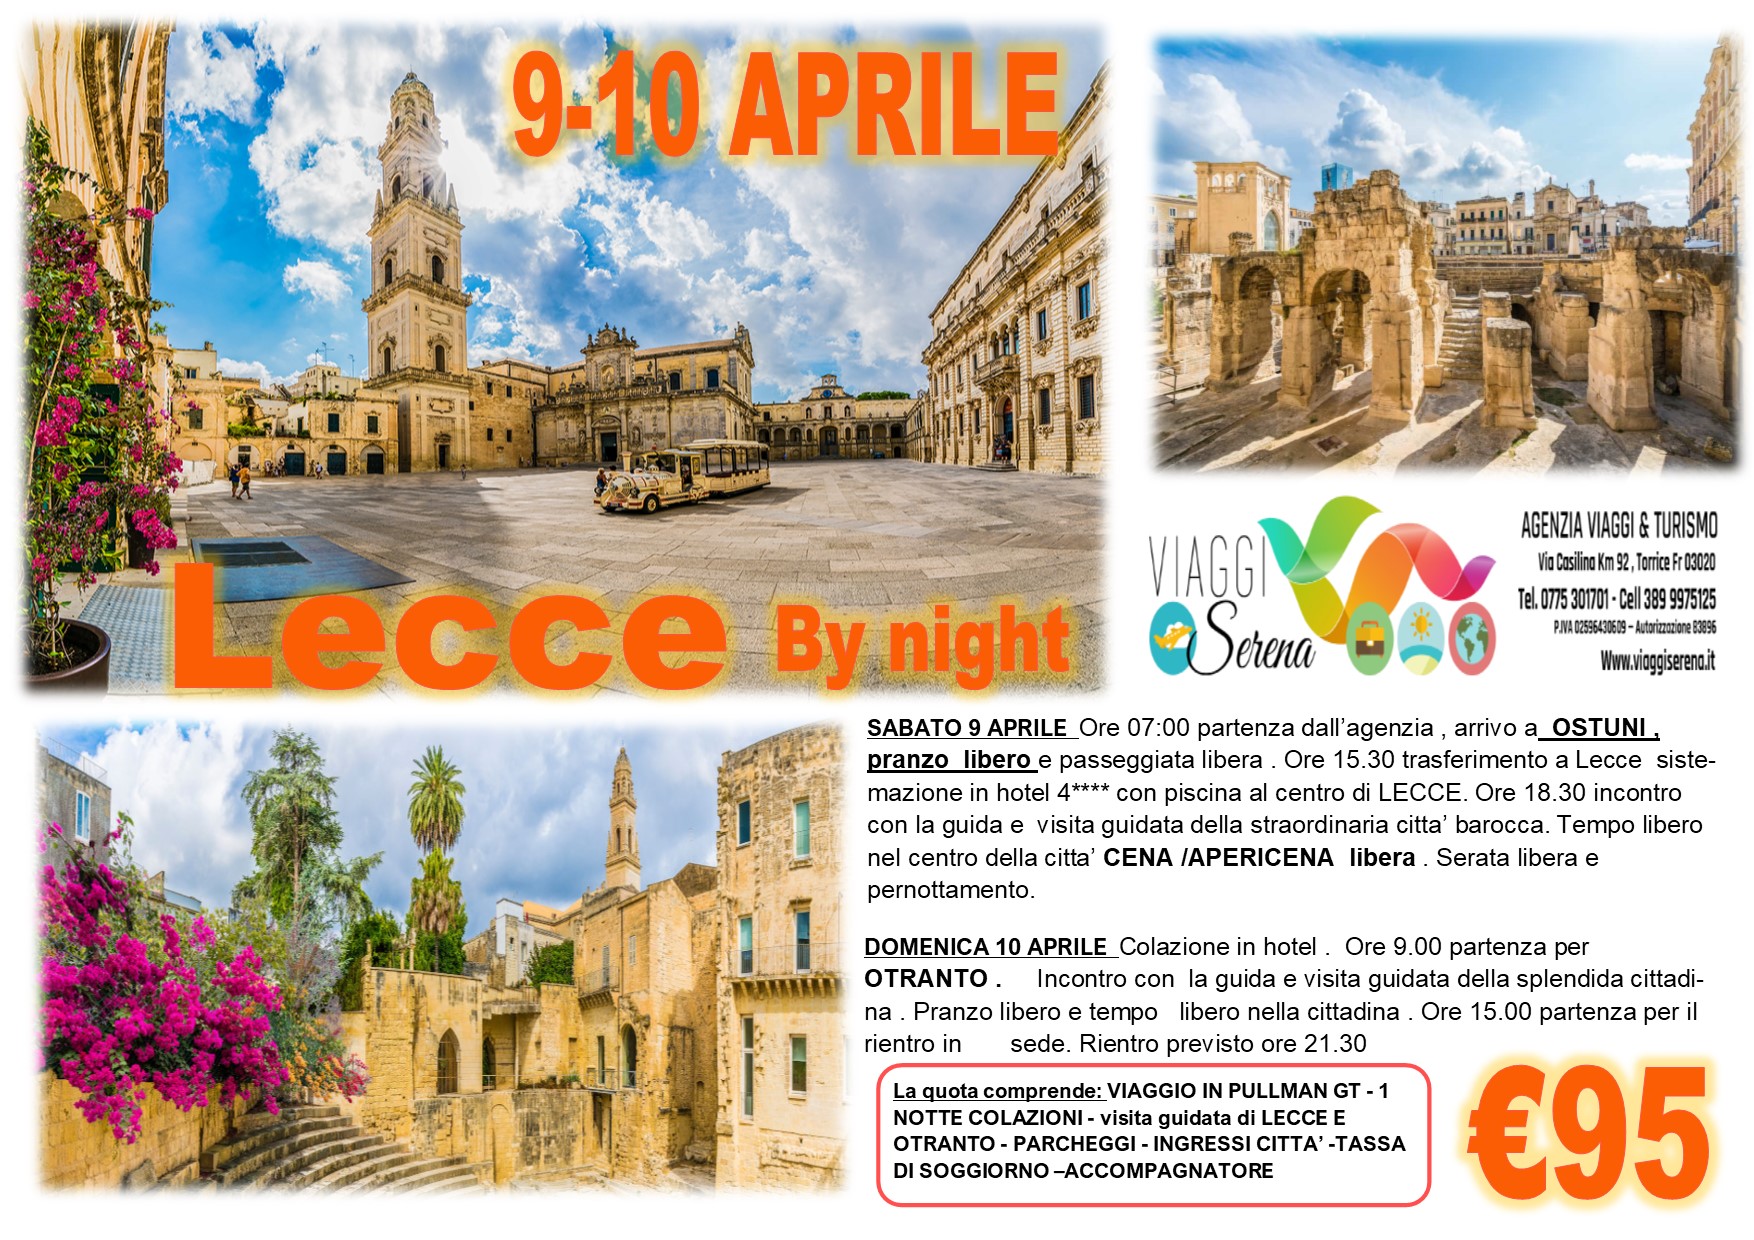 Viaggi di Gruppo: Lecce by night & Otranto 9-10 Aprile € 95,00